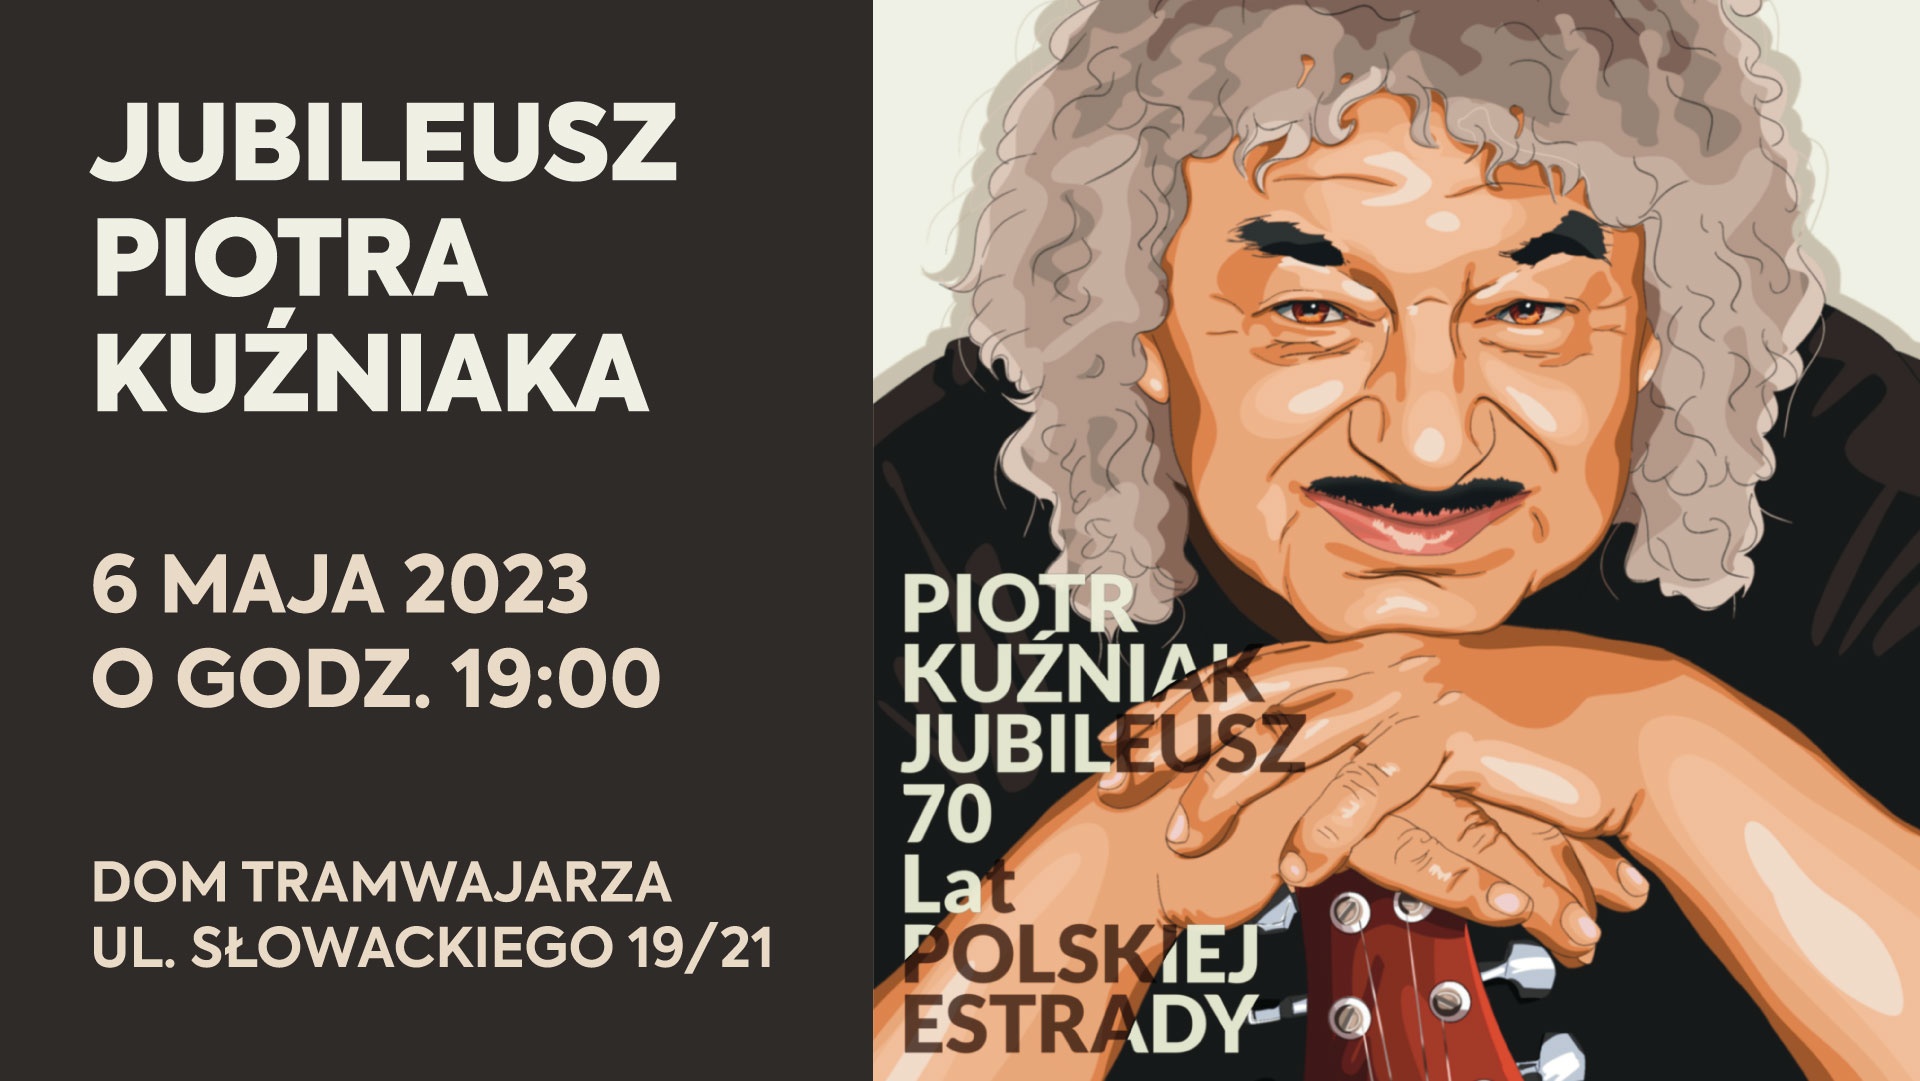 Piotr Kuźniak świętuje 70 lat na scenie!